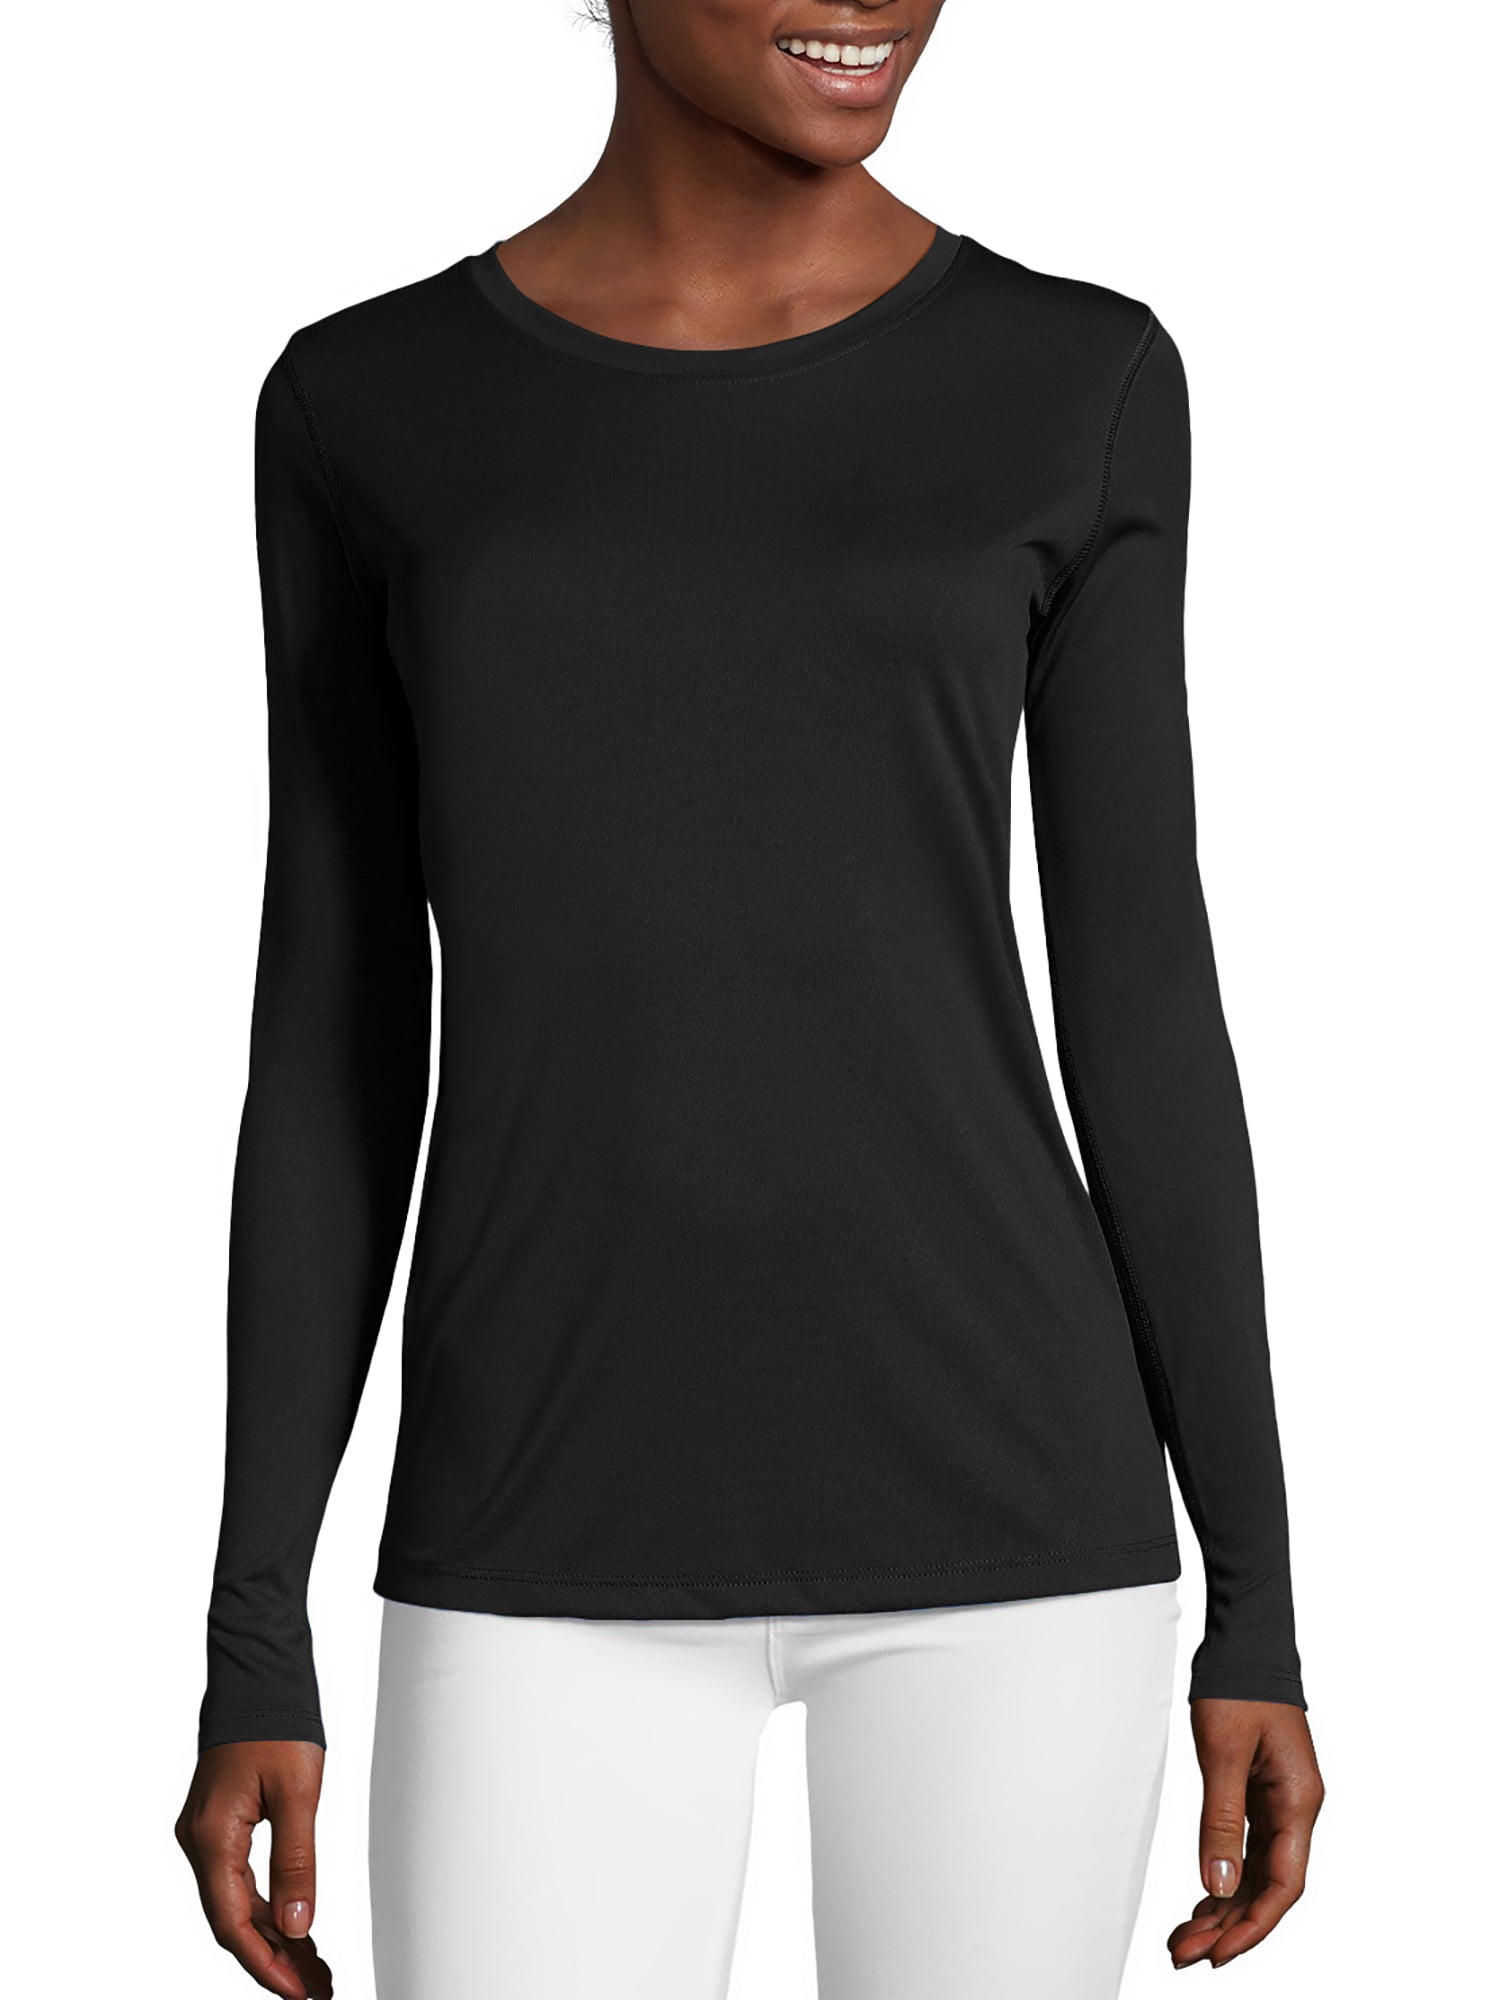 Pianshanzi Sports Shirt Women's Long Sleeve Cotton Black